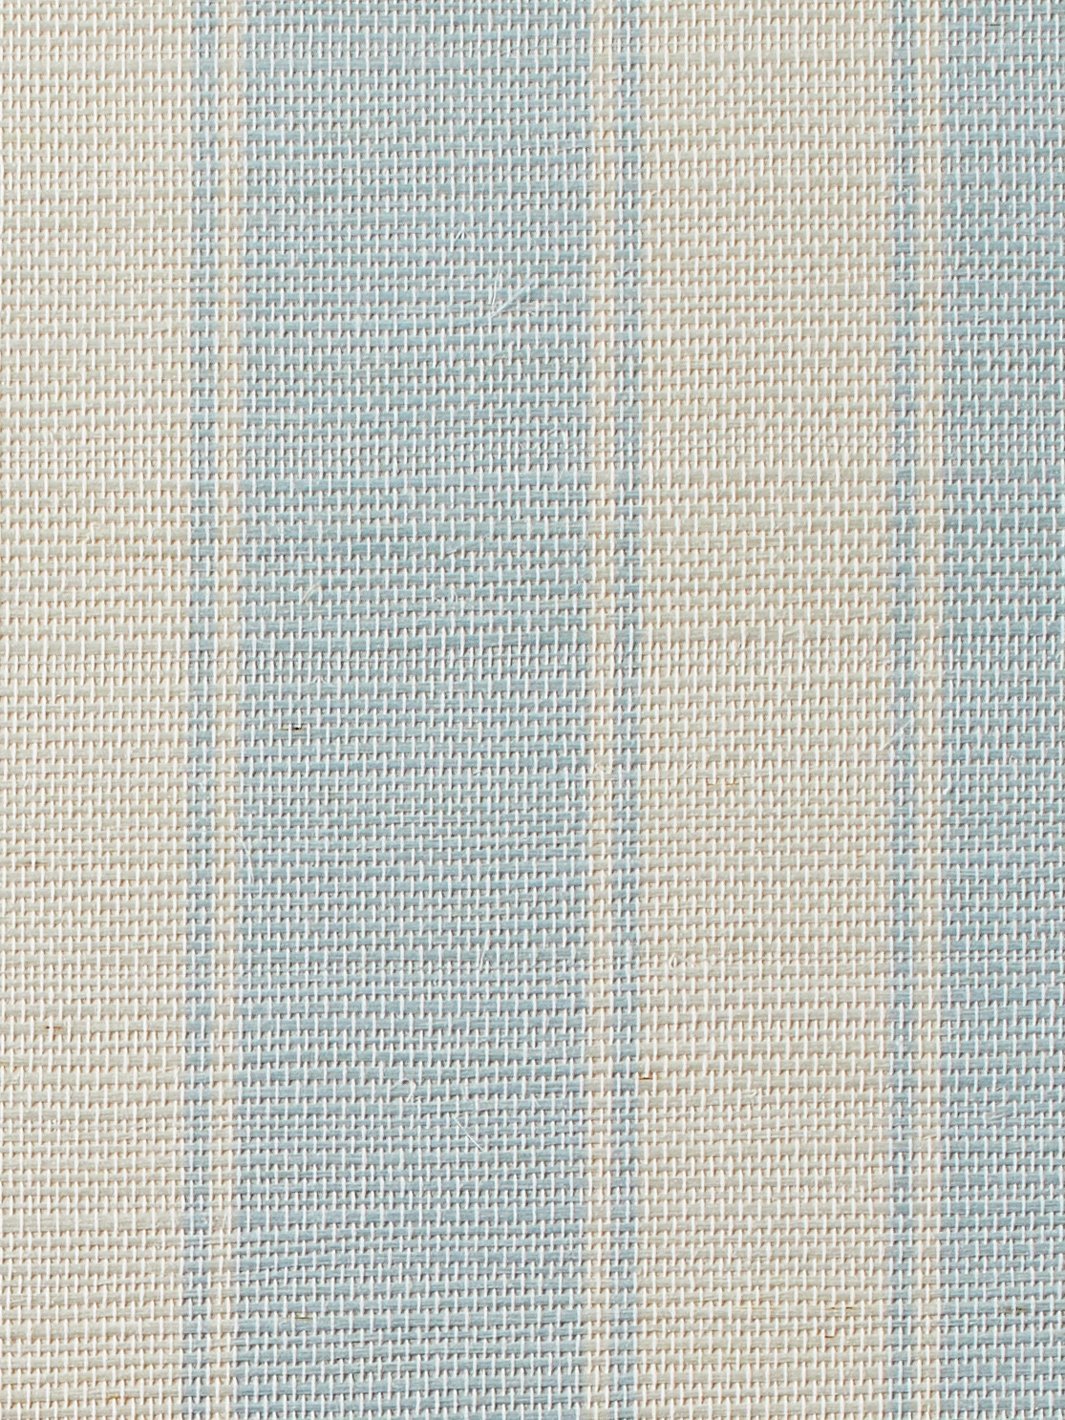 'Ojai Stripe' Grasscloth' Wallpaper by Wallshoppe - Baby Blue